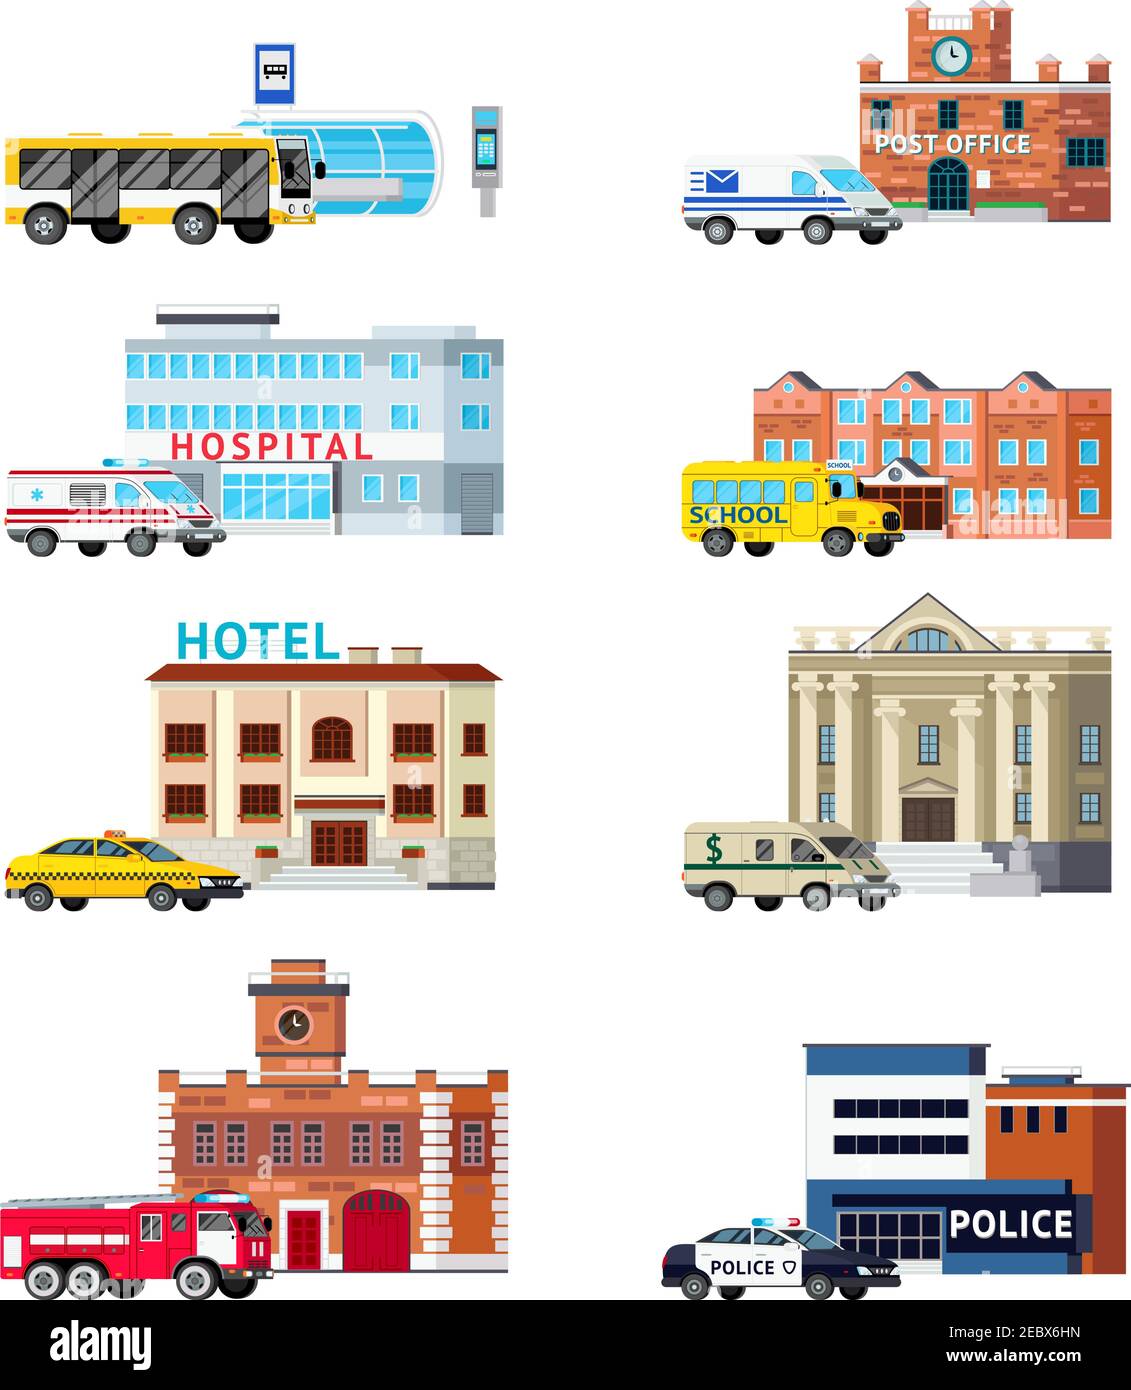 Ensemble orthogonal de services municipaux et de bâtiments, y compris poste  de transport illustration vectorielle isolée de la police de bureau et de  l'hôpital Image Vectorielle Stock - Alamy